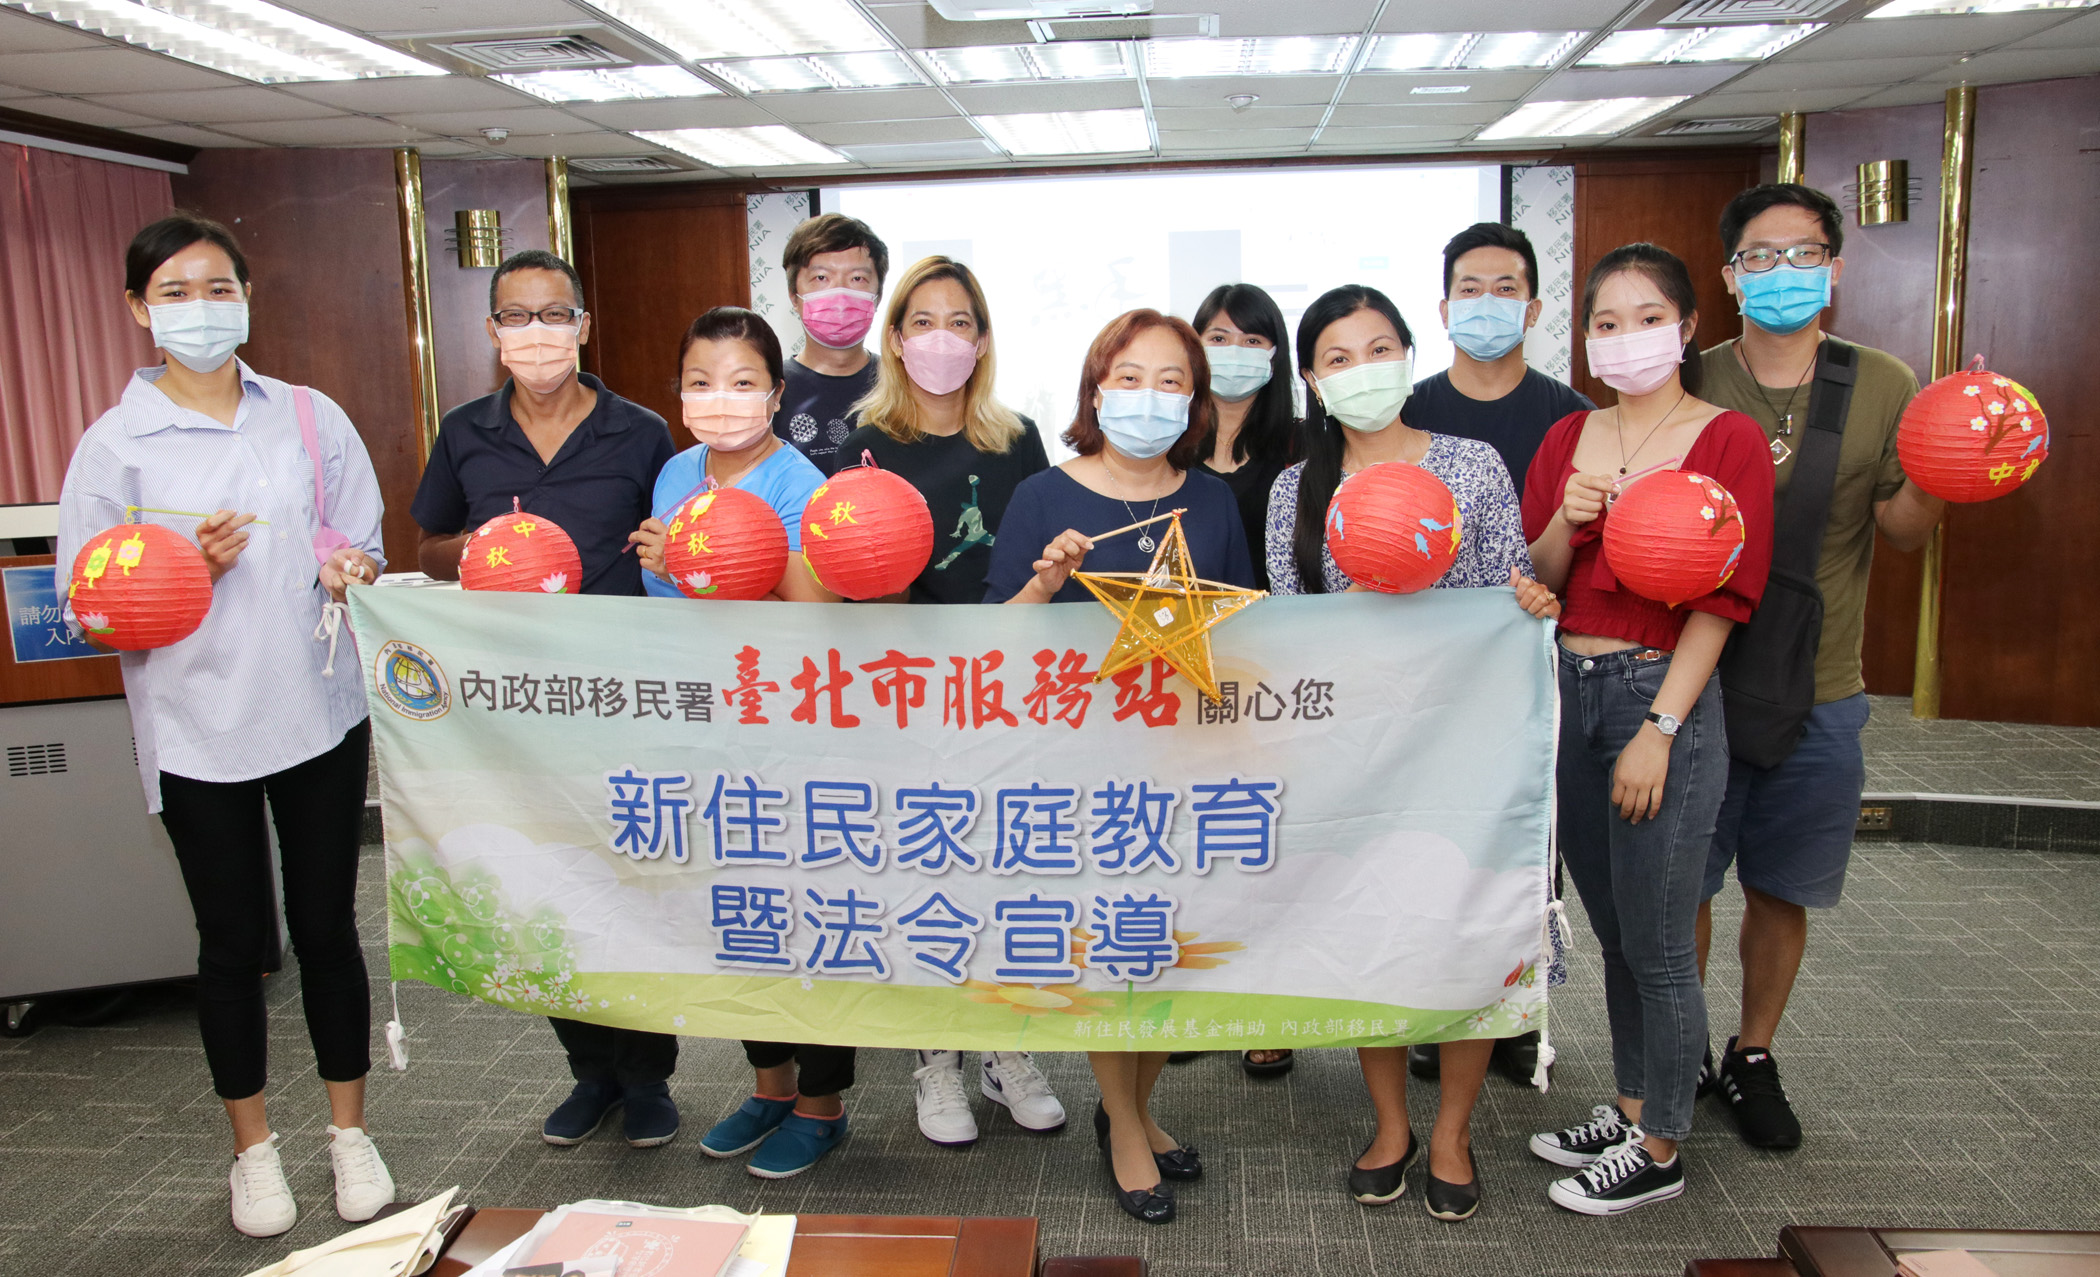 Trạm Phục vụ của Sở Di dân tại thành phố Đài Bắc tổ chức khóa học thích nghi với cuộc sống như tuyên truyền pháp luật và giáo dục gia đình cho những di dân mới. (Nguồn ảnh: Trạm Phục vụ của Sở Di dân tại thành phố Đài Bắc)